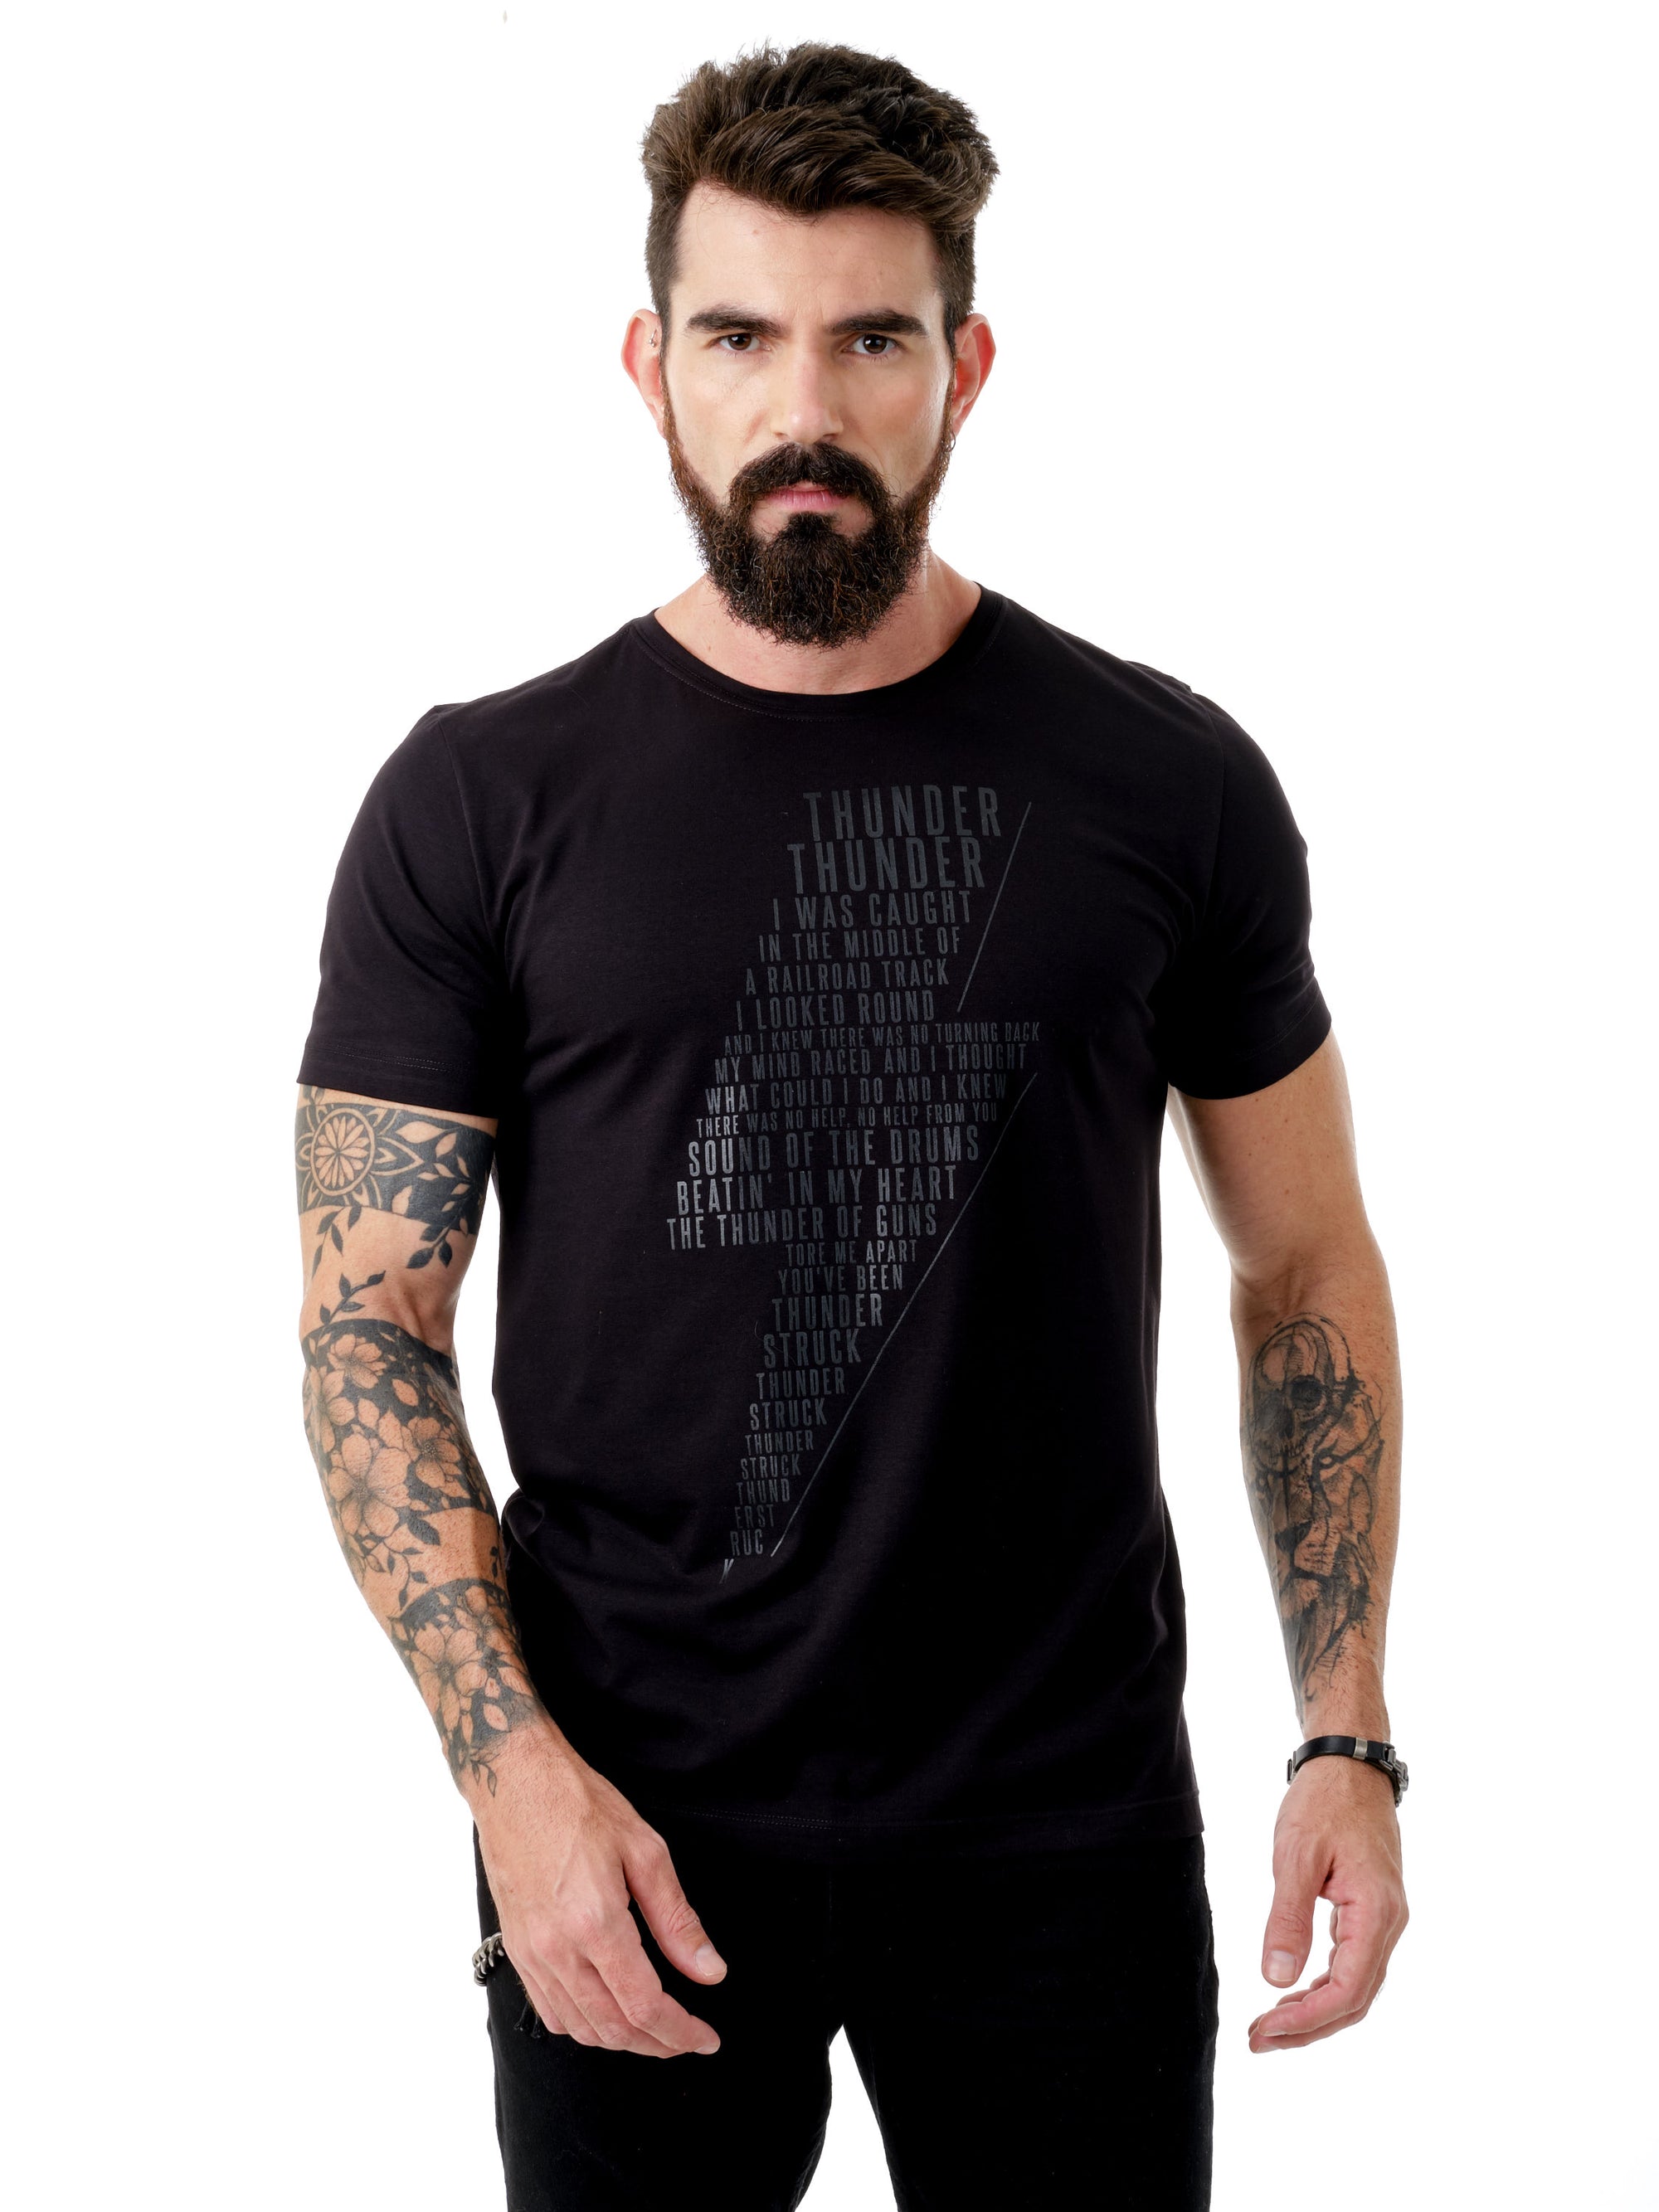 Camiseta Unconventional® Thunderstruck em algodão egípcio preto